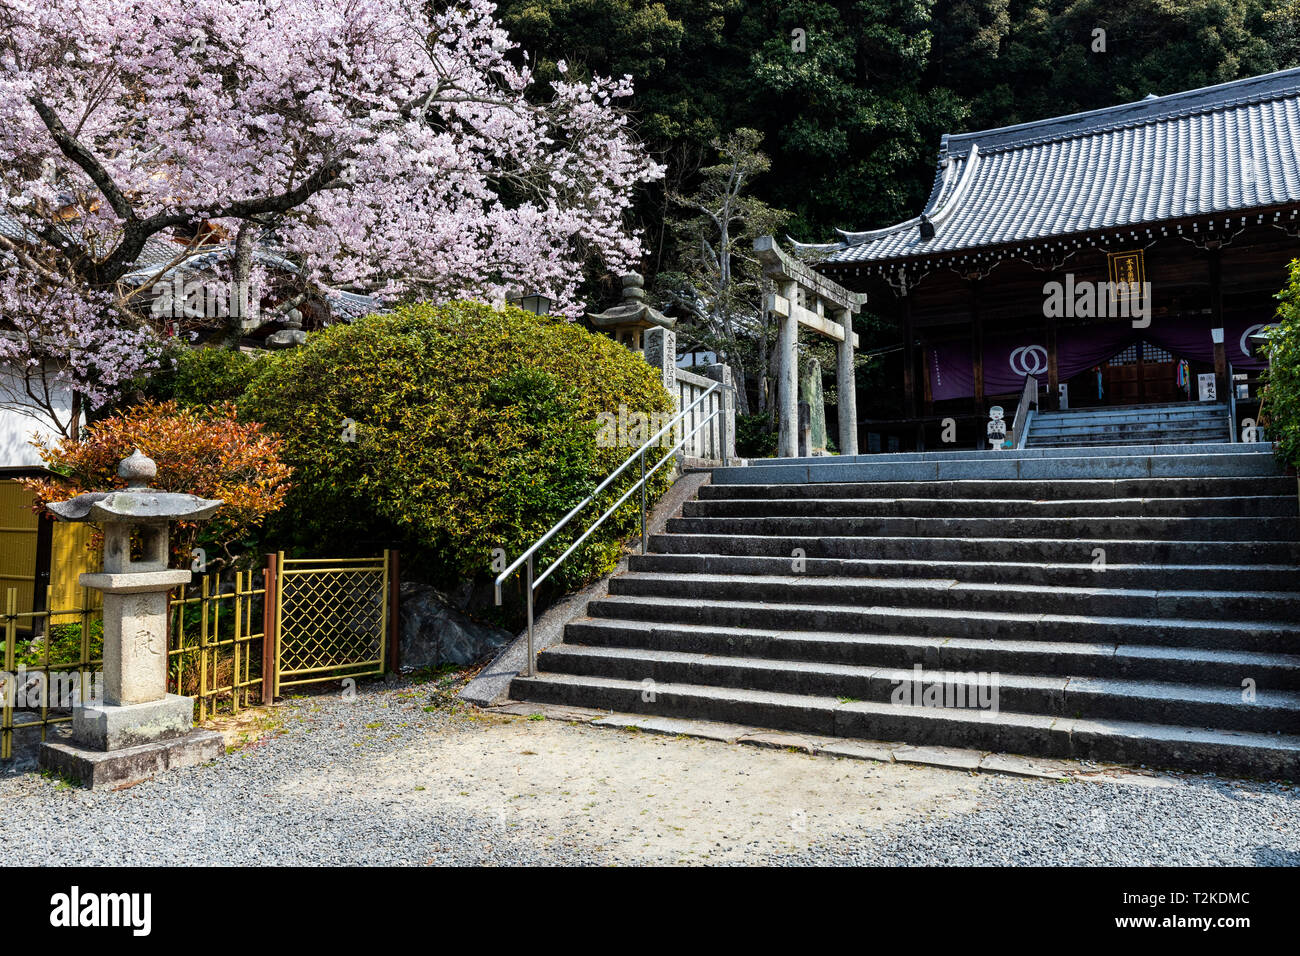 Les fleurs de cerisier Sakura à Hantaji Hantaji - Temple - Temple de grande richesse est situé sur une colline avec une vue sur le château et se Seto Banque D'Images